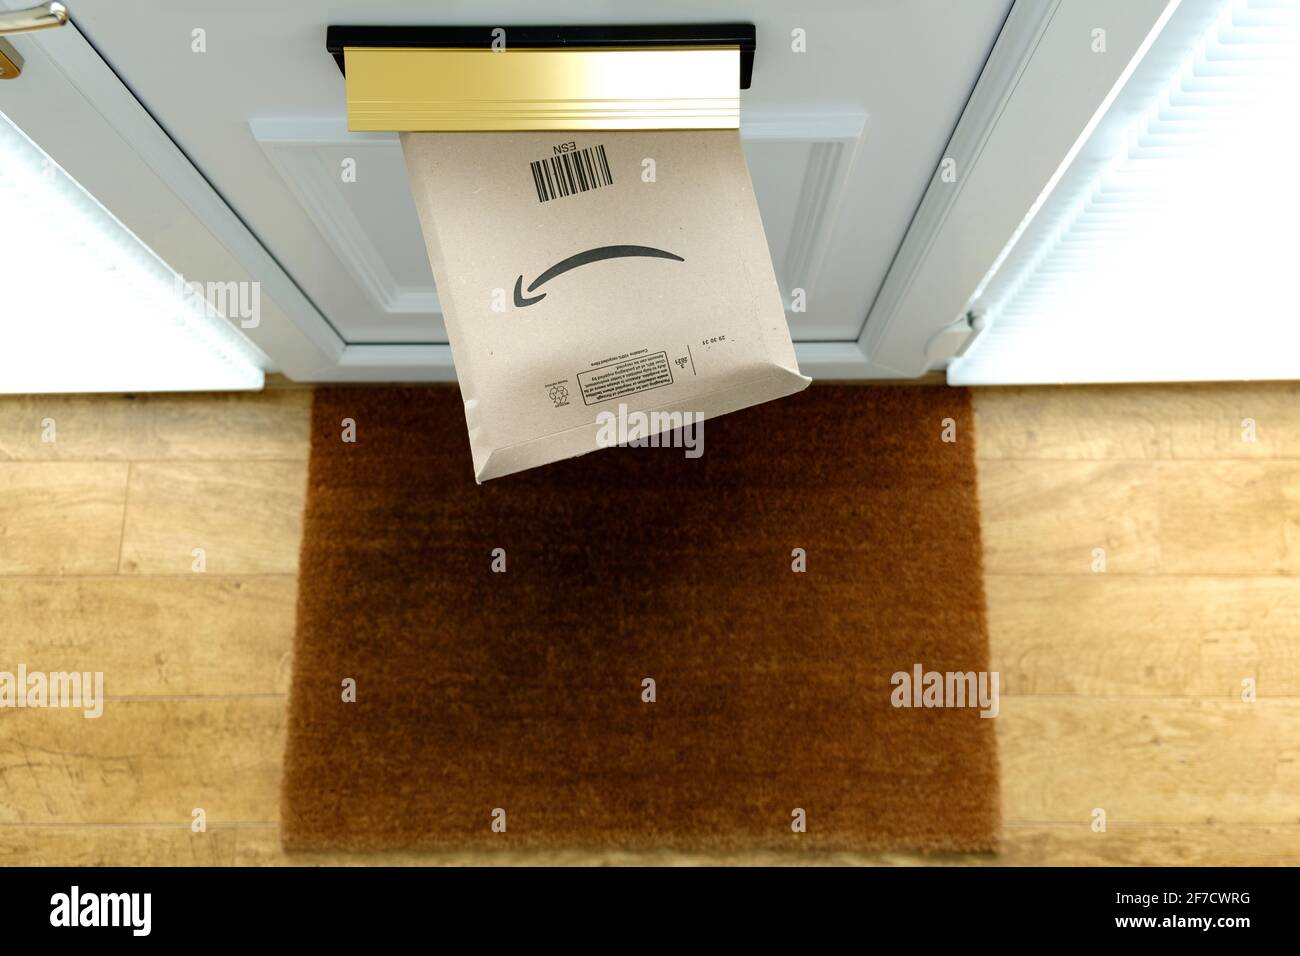 Une livraison de colis Amazon Prime est envoyée dans une boîte aux lettres située dans une porte d'entrée de la maison. L'emballage est toujours dans la boîte aux lettres et vu de dessus Banque D'Images